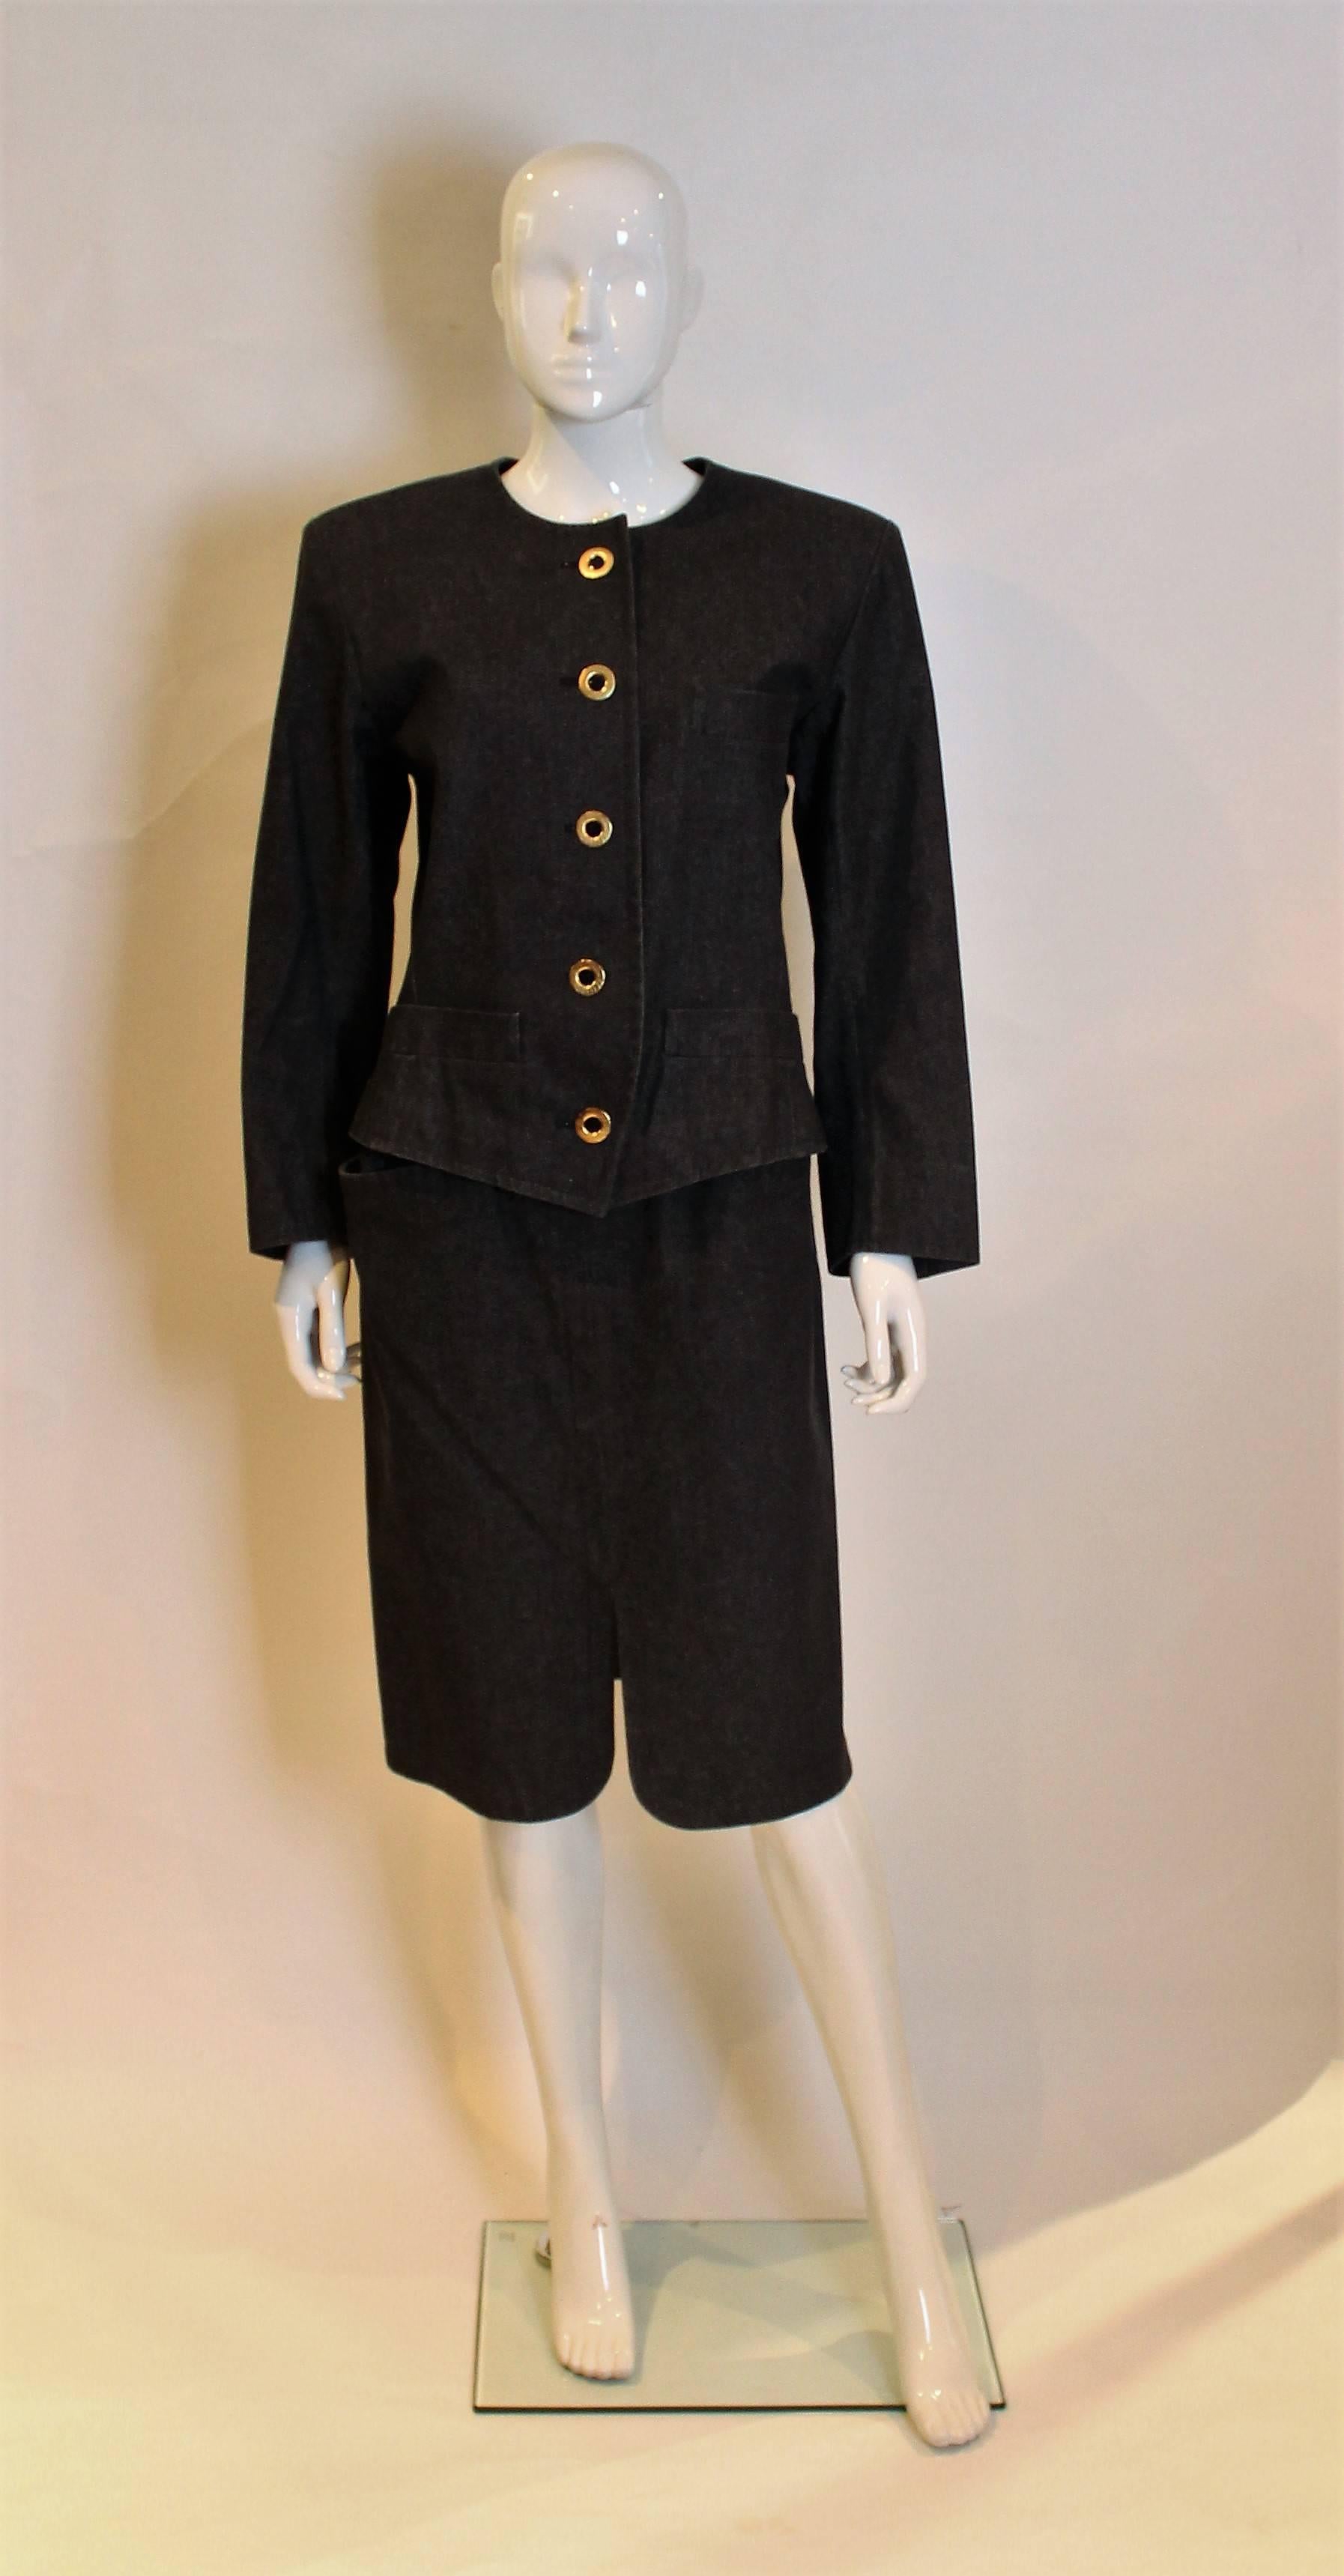 Ein toller Anzug für den Frühling. Dieser schwarze Rockanzug  hat eine Jacke mit Rundhalsausschnitt und 5-Knopf-Öffnung vorne. Er hat 3 Knöpfe an jeder Manschette, eine Brusttasche auf der linken Seite und 2 Taschen am Hüftabschluss. Der Rock hat